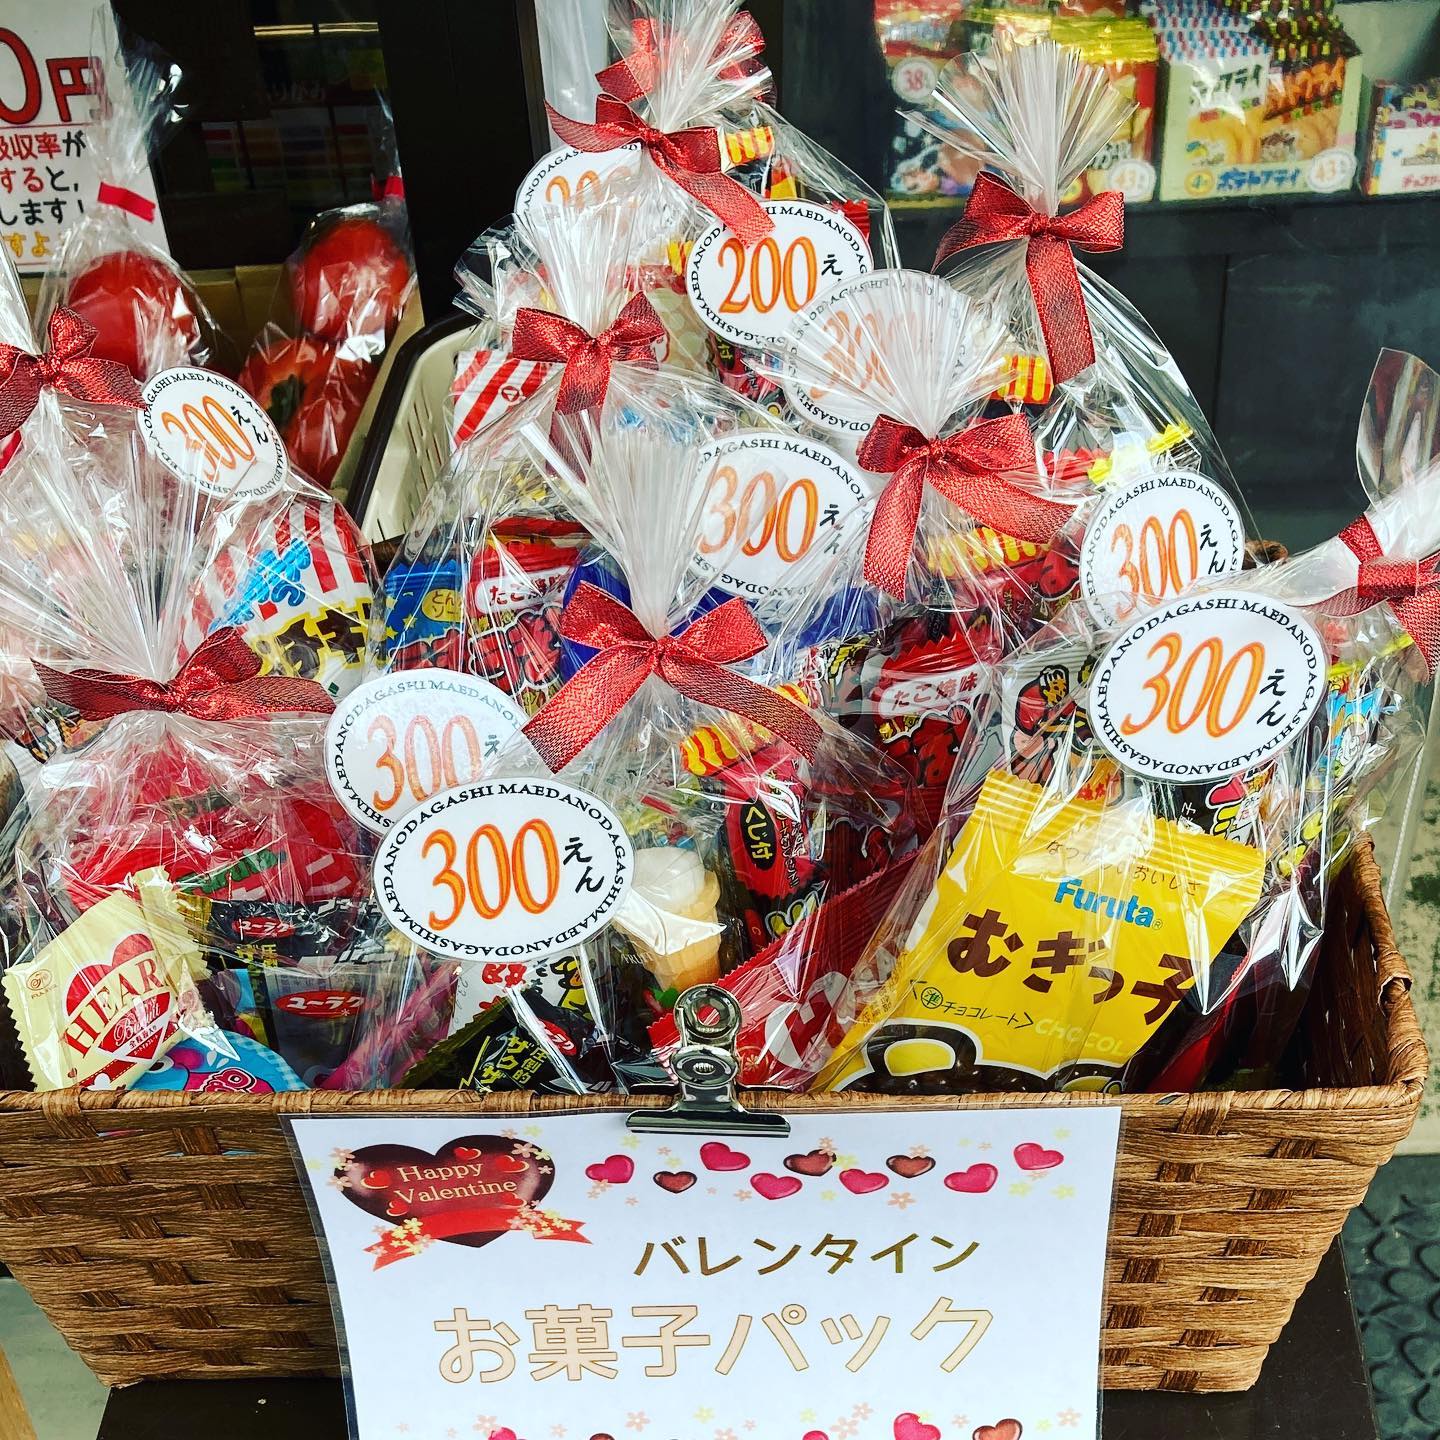 おはようございますマエダ文具店です！来週はバレンタインデー️ですね〜日本では女性︎男性への愛の告白チョコレートが定番ですが、海外では男性︎女性へ、チョコレートに限らず花束などをプレゼントします。どっちにしろもらったら嬉しいですから、お互いにプレゼントしあってもいいですよね〜と言うことで、バレンタイン駄菓子セットを並べ始めました！チョコレートメインの詰合せになってます^_^#マエダ文具店 #前田文具店#梅小路公園 #梅小路京都西駅#京都水族館 #京都鉄道博物館#ホテルエミオン京都 #梅小路ポテル京都 #ザロイヤルパークホテル京都梅小路 #七条センター商店街#バレンタインデー #valentineday #チョコレート #チョコ #駄菓子 #チョコバット #チョコケーキ #駄菓子も売ってる文具店